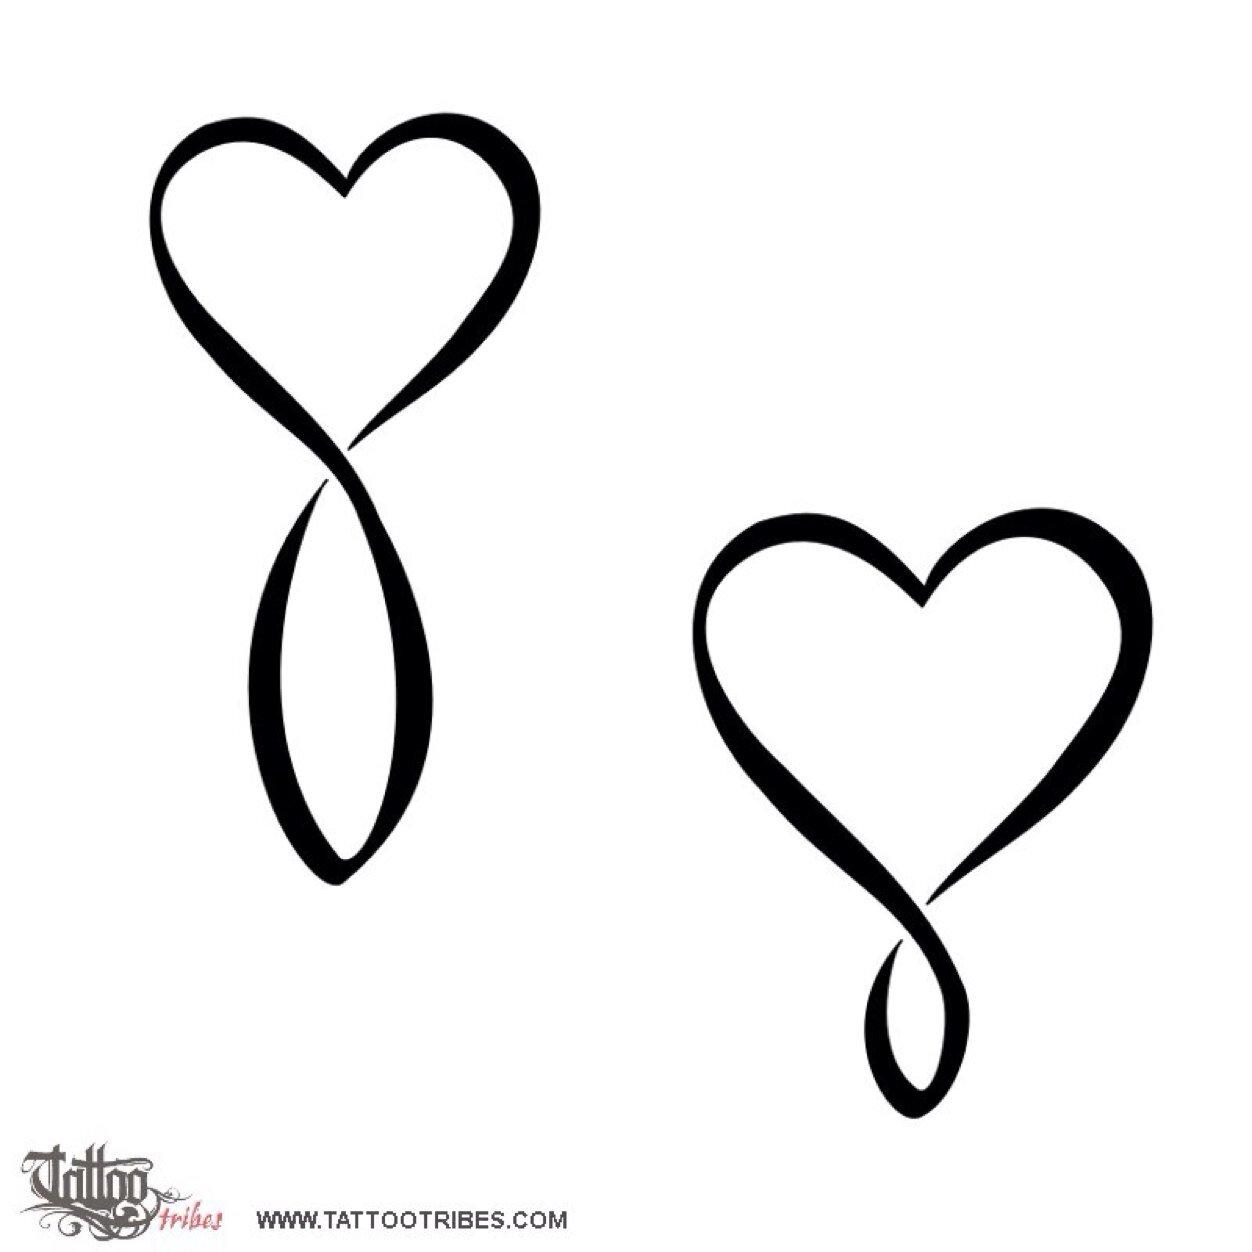 Heart Infinity Logo - Heart Infinity Symbol Tattoos